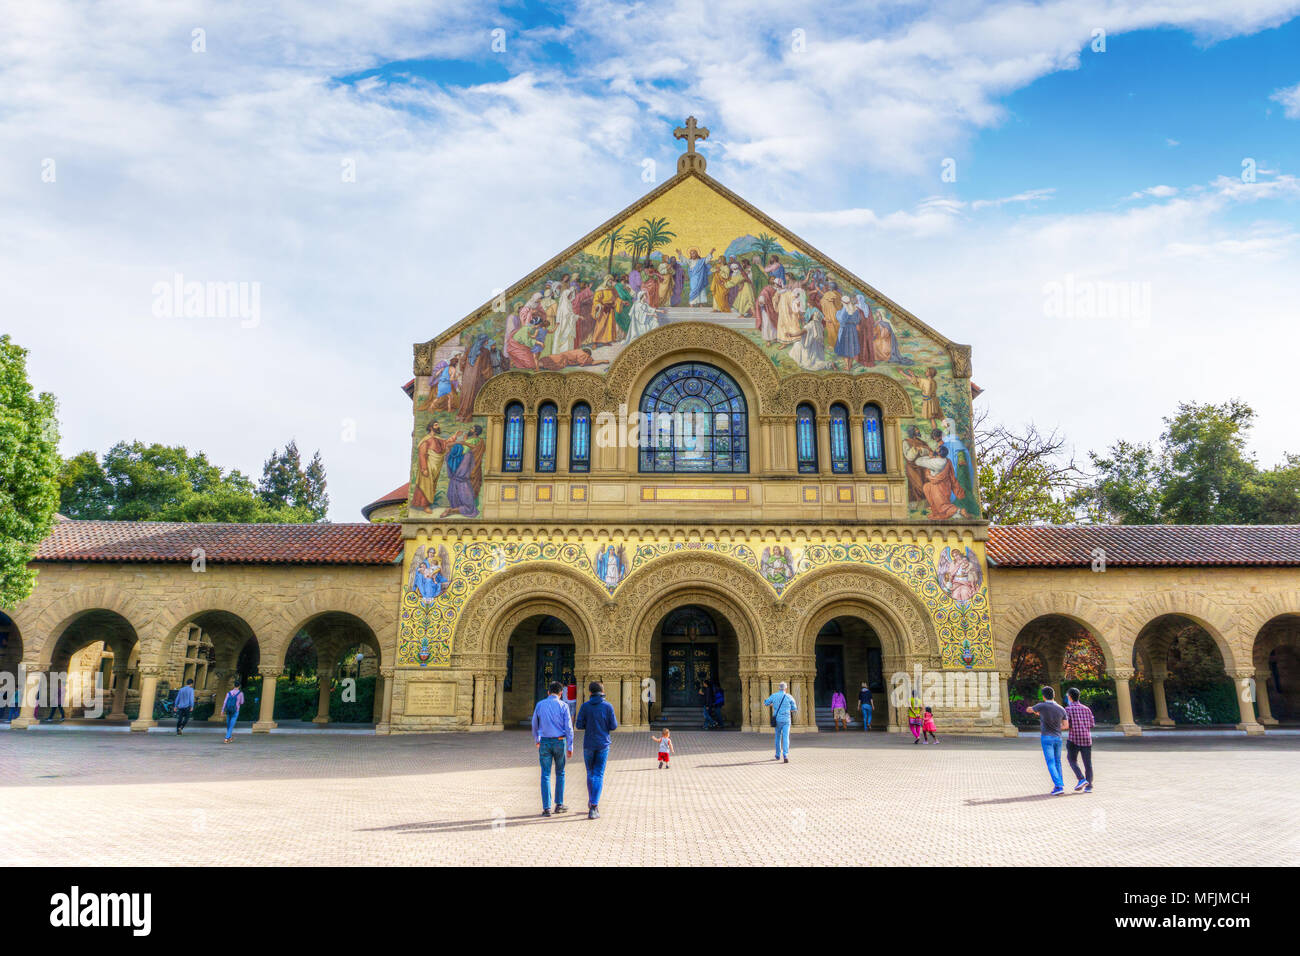 PALO ALTO, USA - Mar 31, 2018: Die gedächtniskirche an der Stanford University. 1885 gegründet, ist die Universität eine der weltweit führenden Einrichtungen Reno Stockfoto